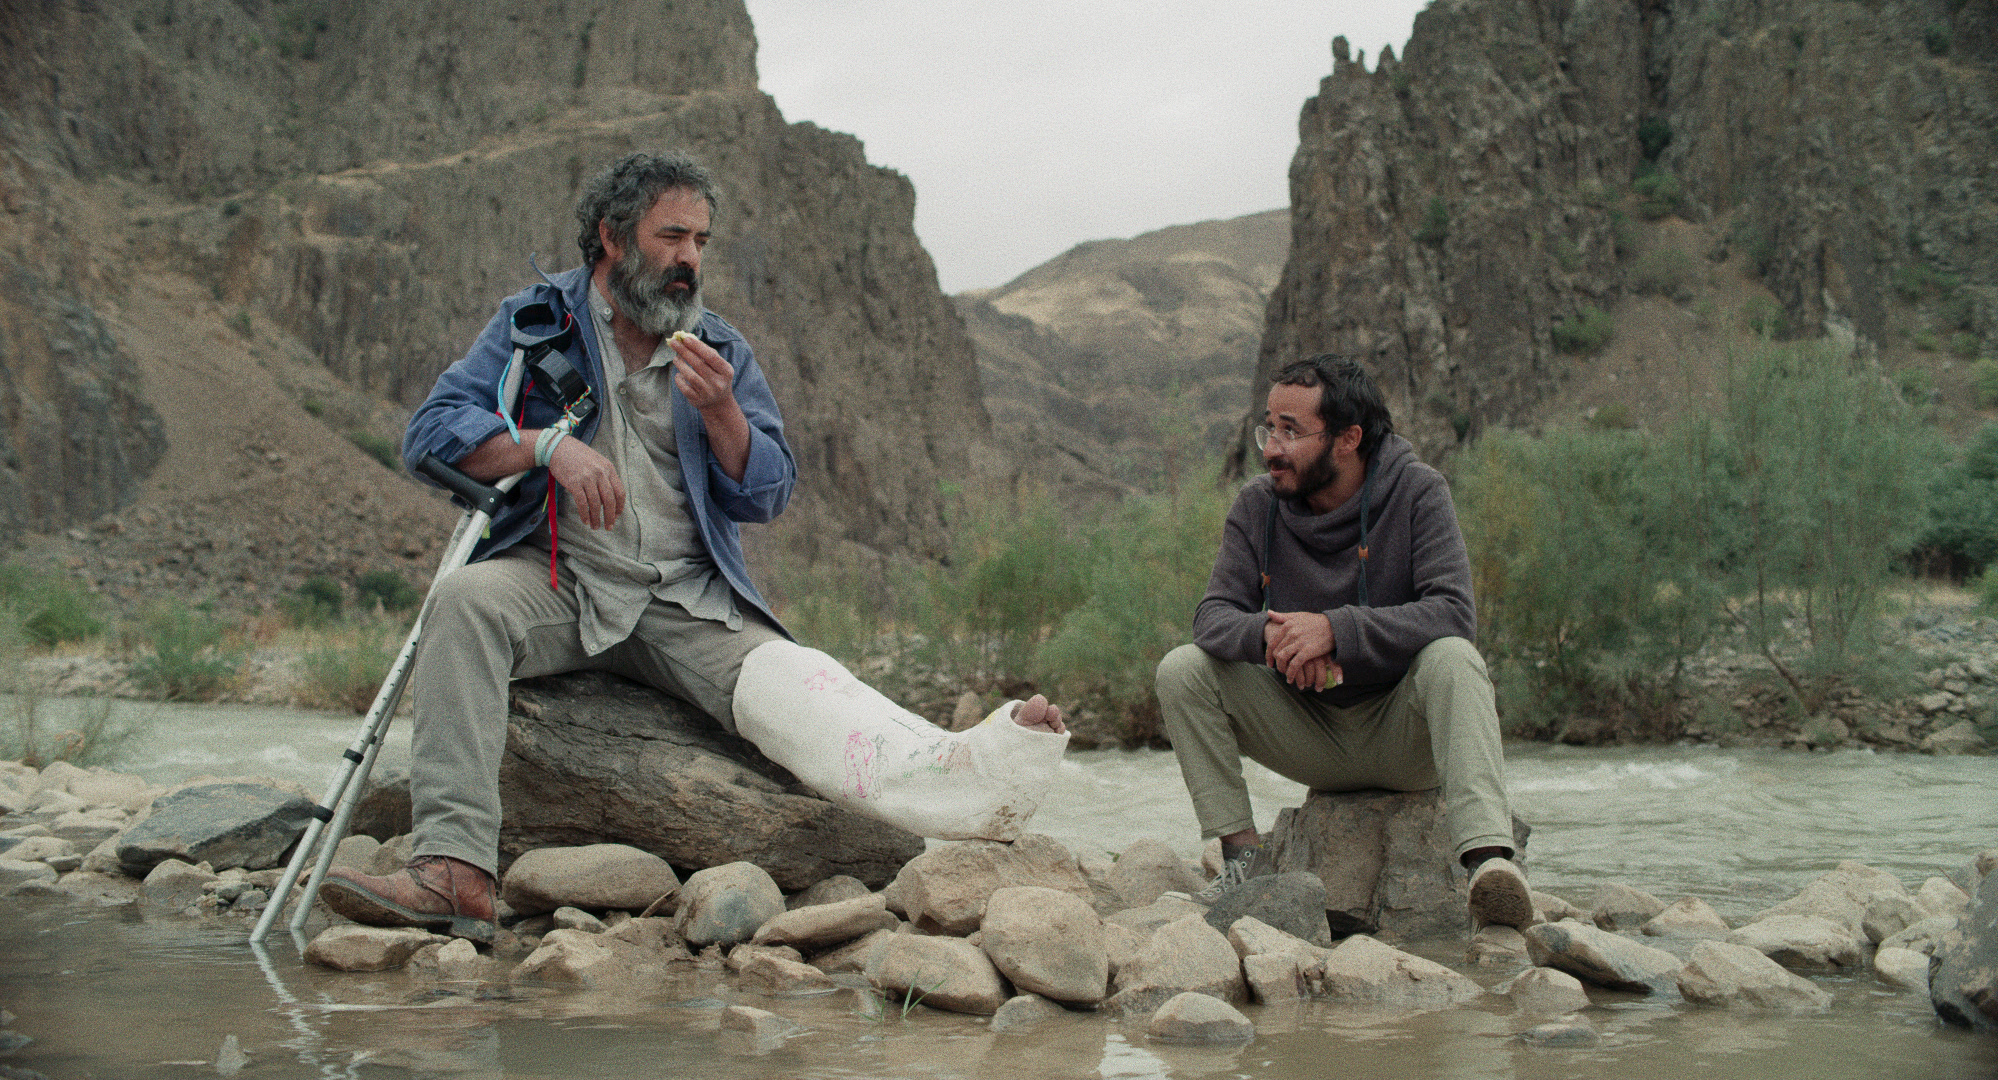 Cena do filme Pegando a Estrada. A foto mostra dois homens persas sentados sobre pedras no meio de um riacho. O da esquerda é mais velho, tem barba grisalha, a perna esquerda engessada e duas muletas apoiadas em seu corpo. O outro é jovem, tem óculos, cabelos escuros e barba.